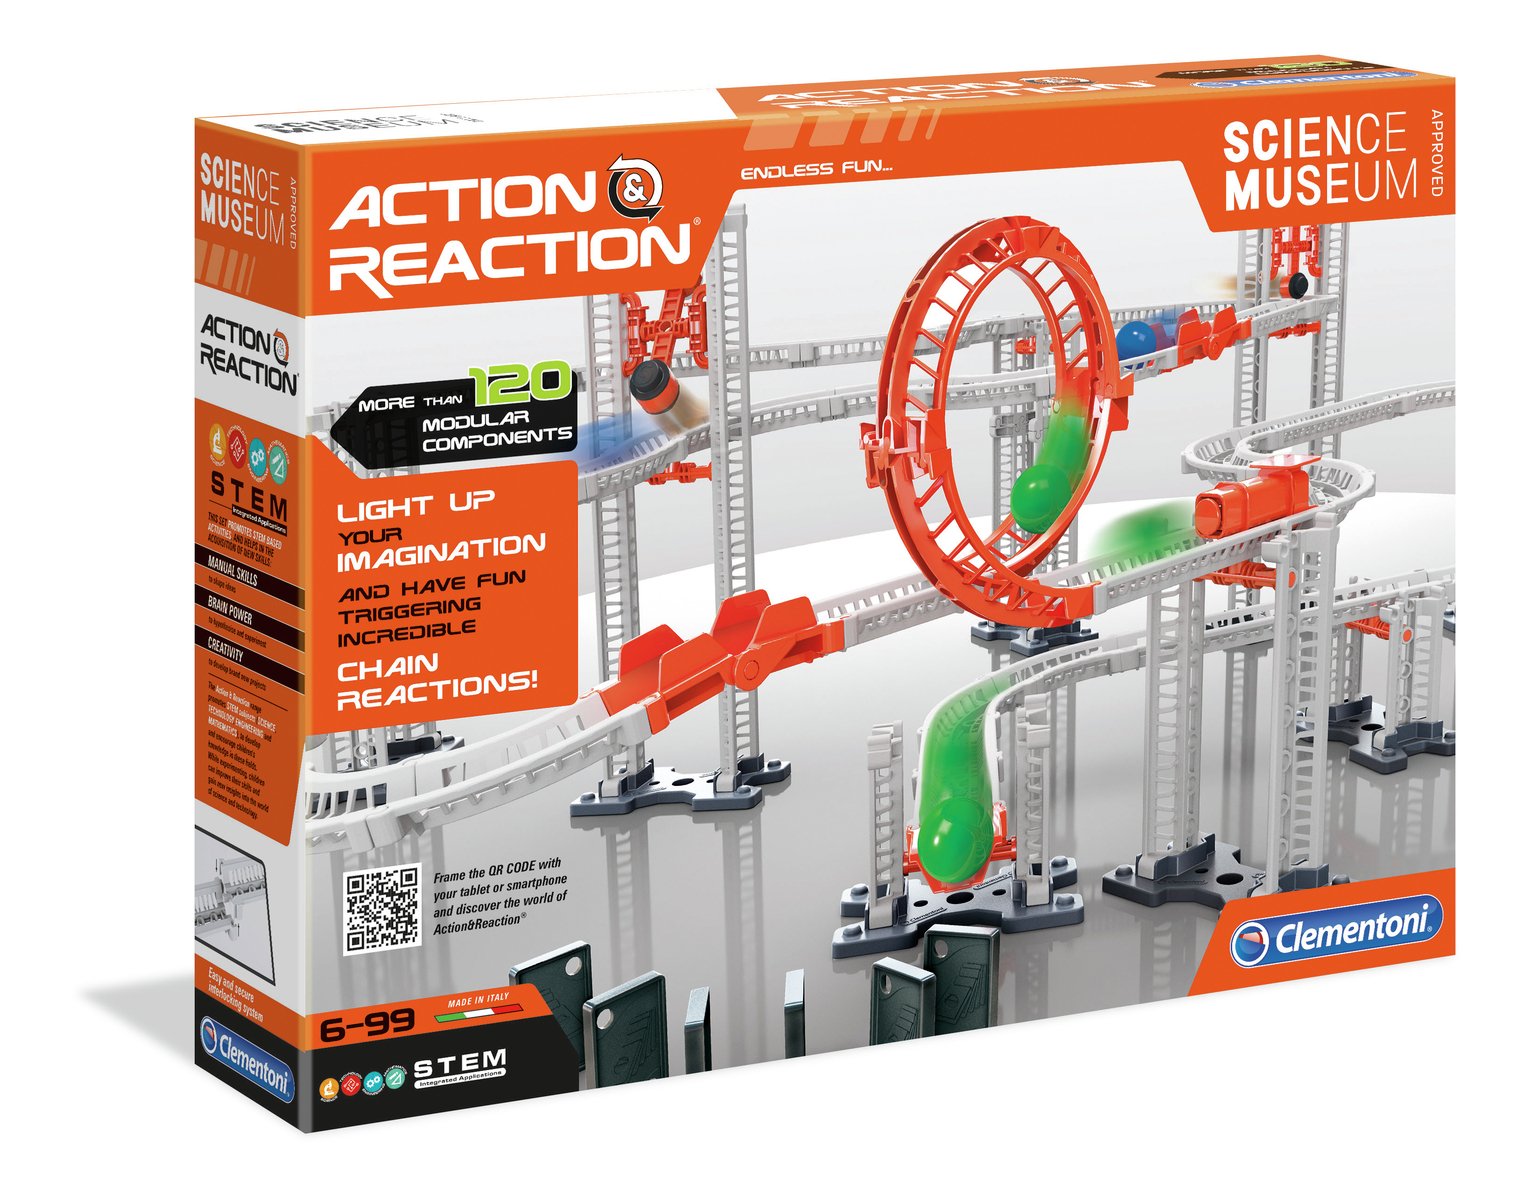 Clementoni Science Museum Action & Reaction Set